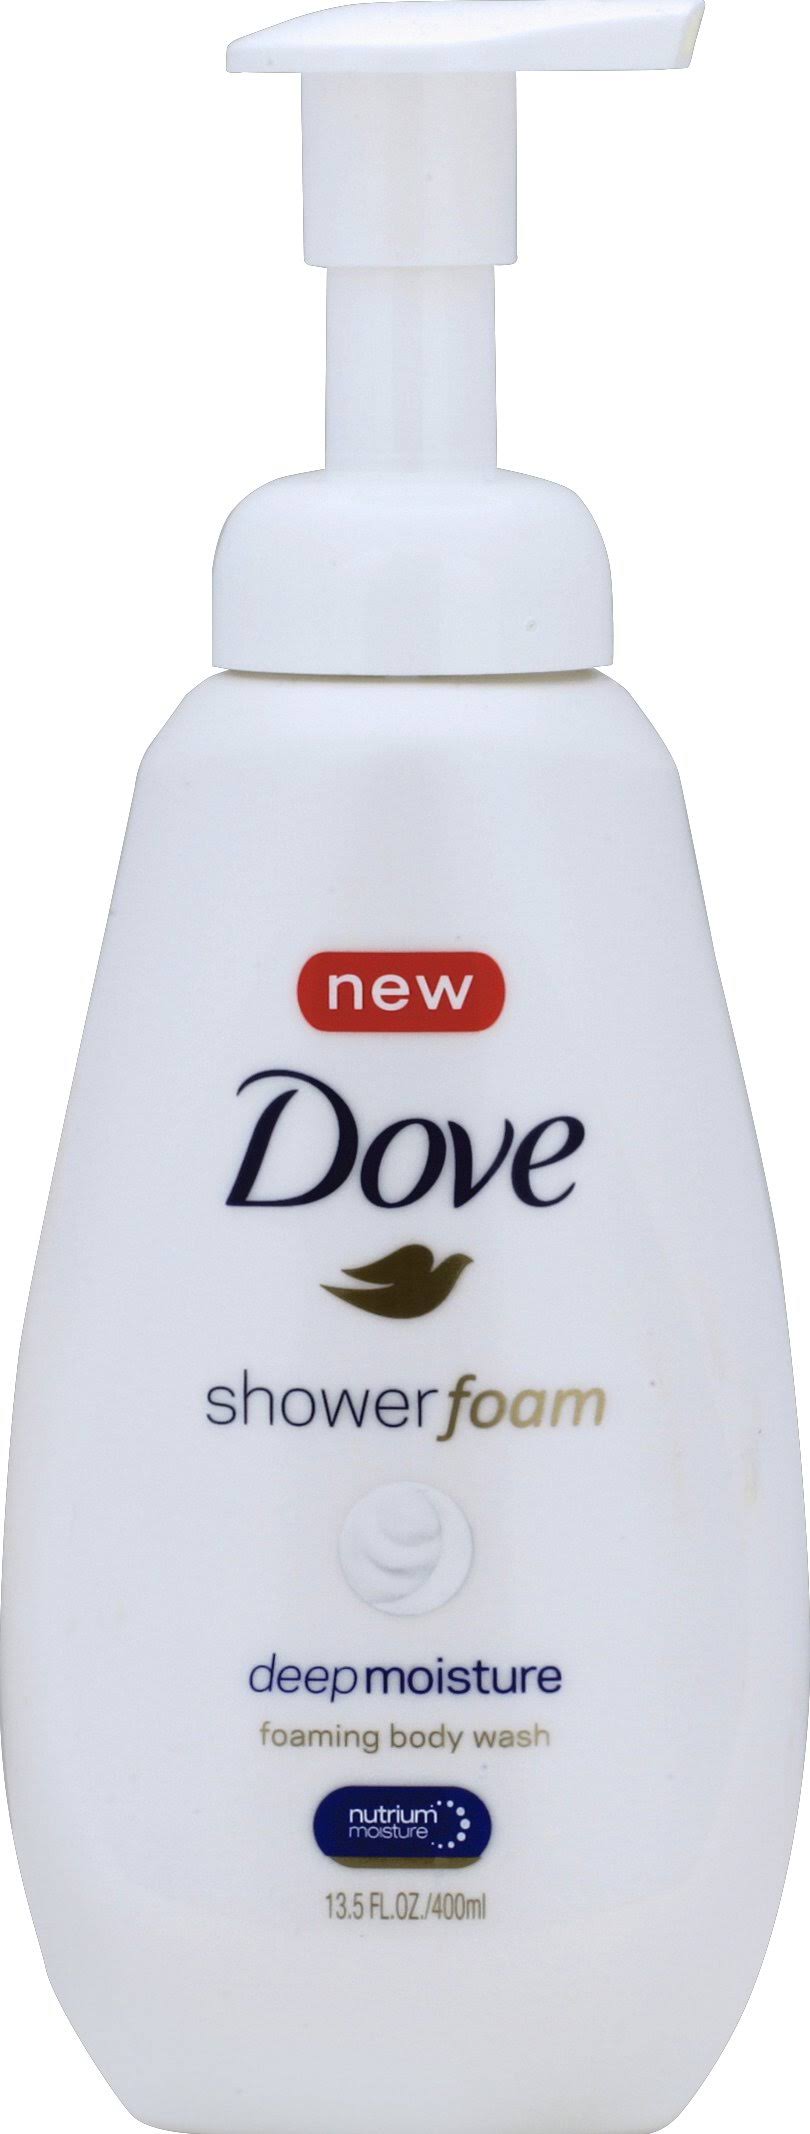 Dove Shower Foam Deep Moisture Foaming Body Wash - 400ml